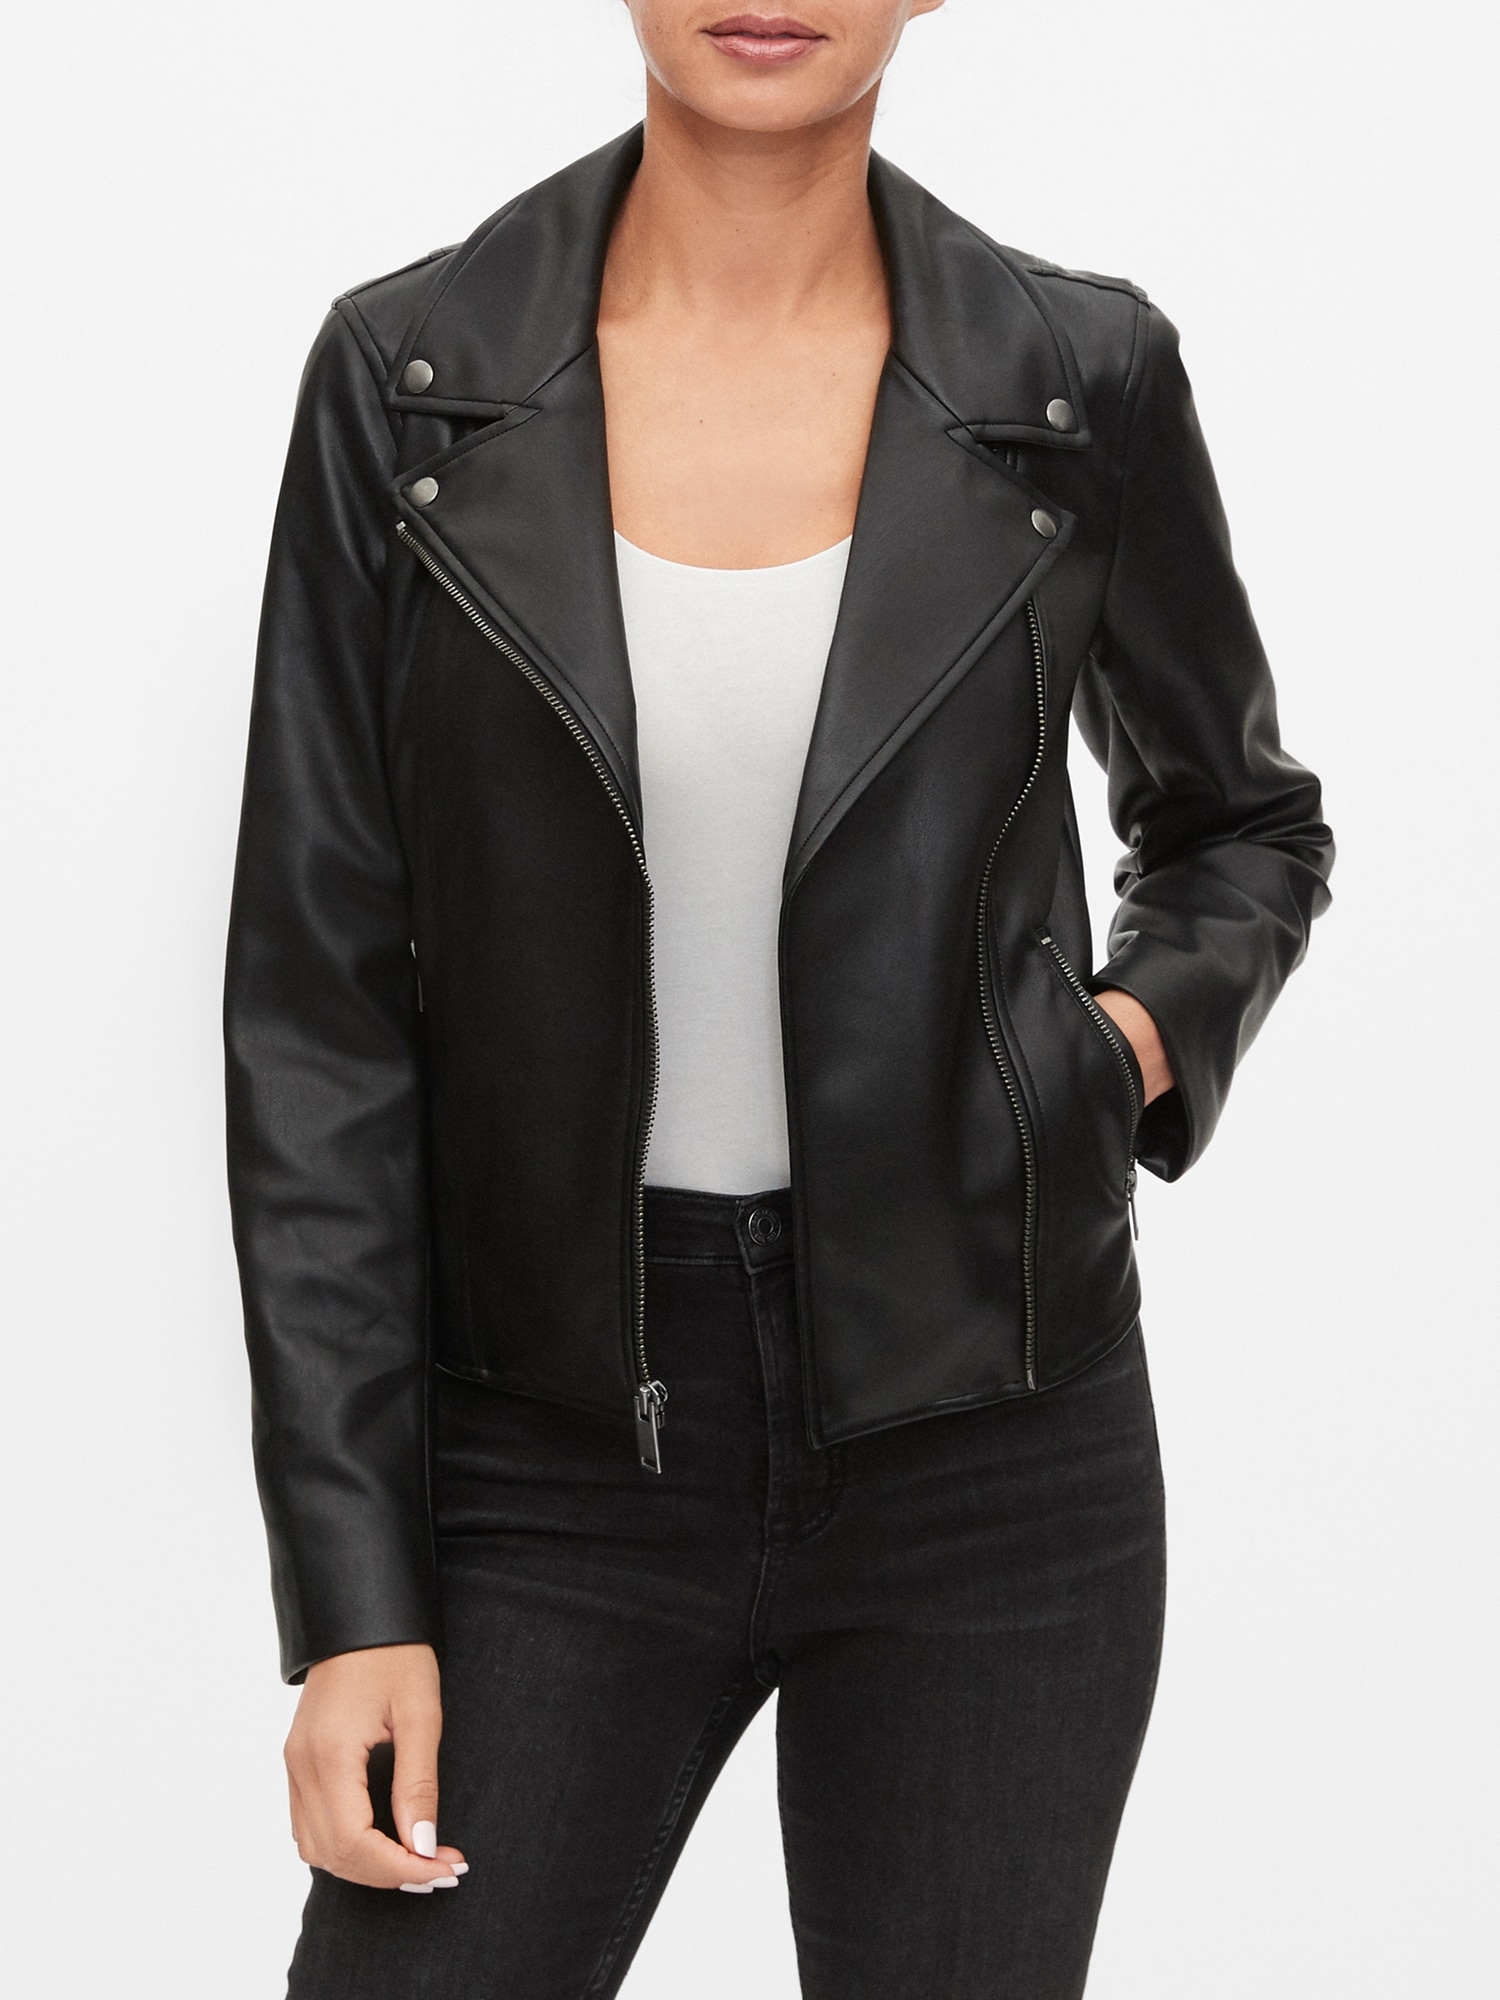 gap black leather jacket